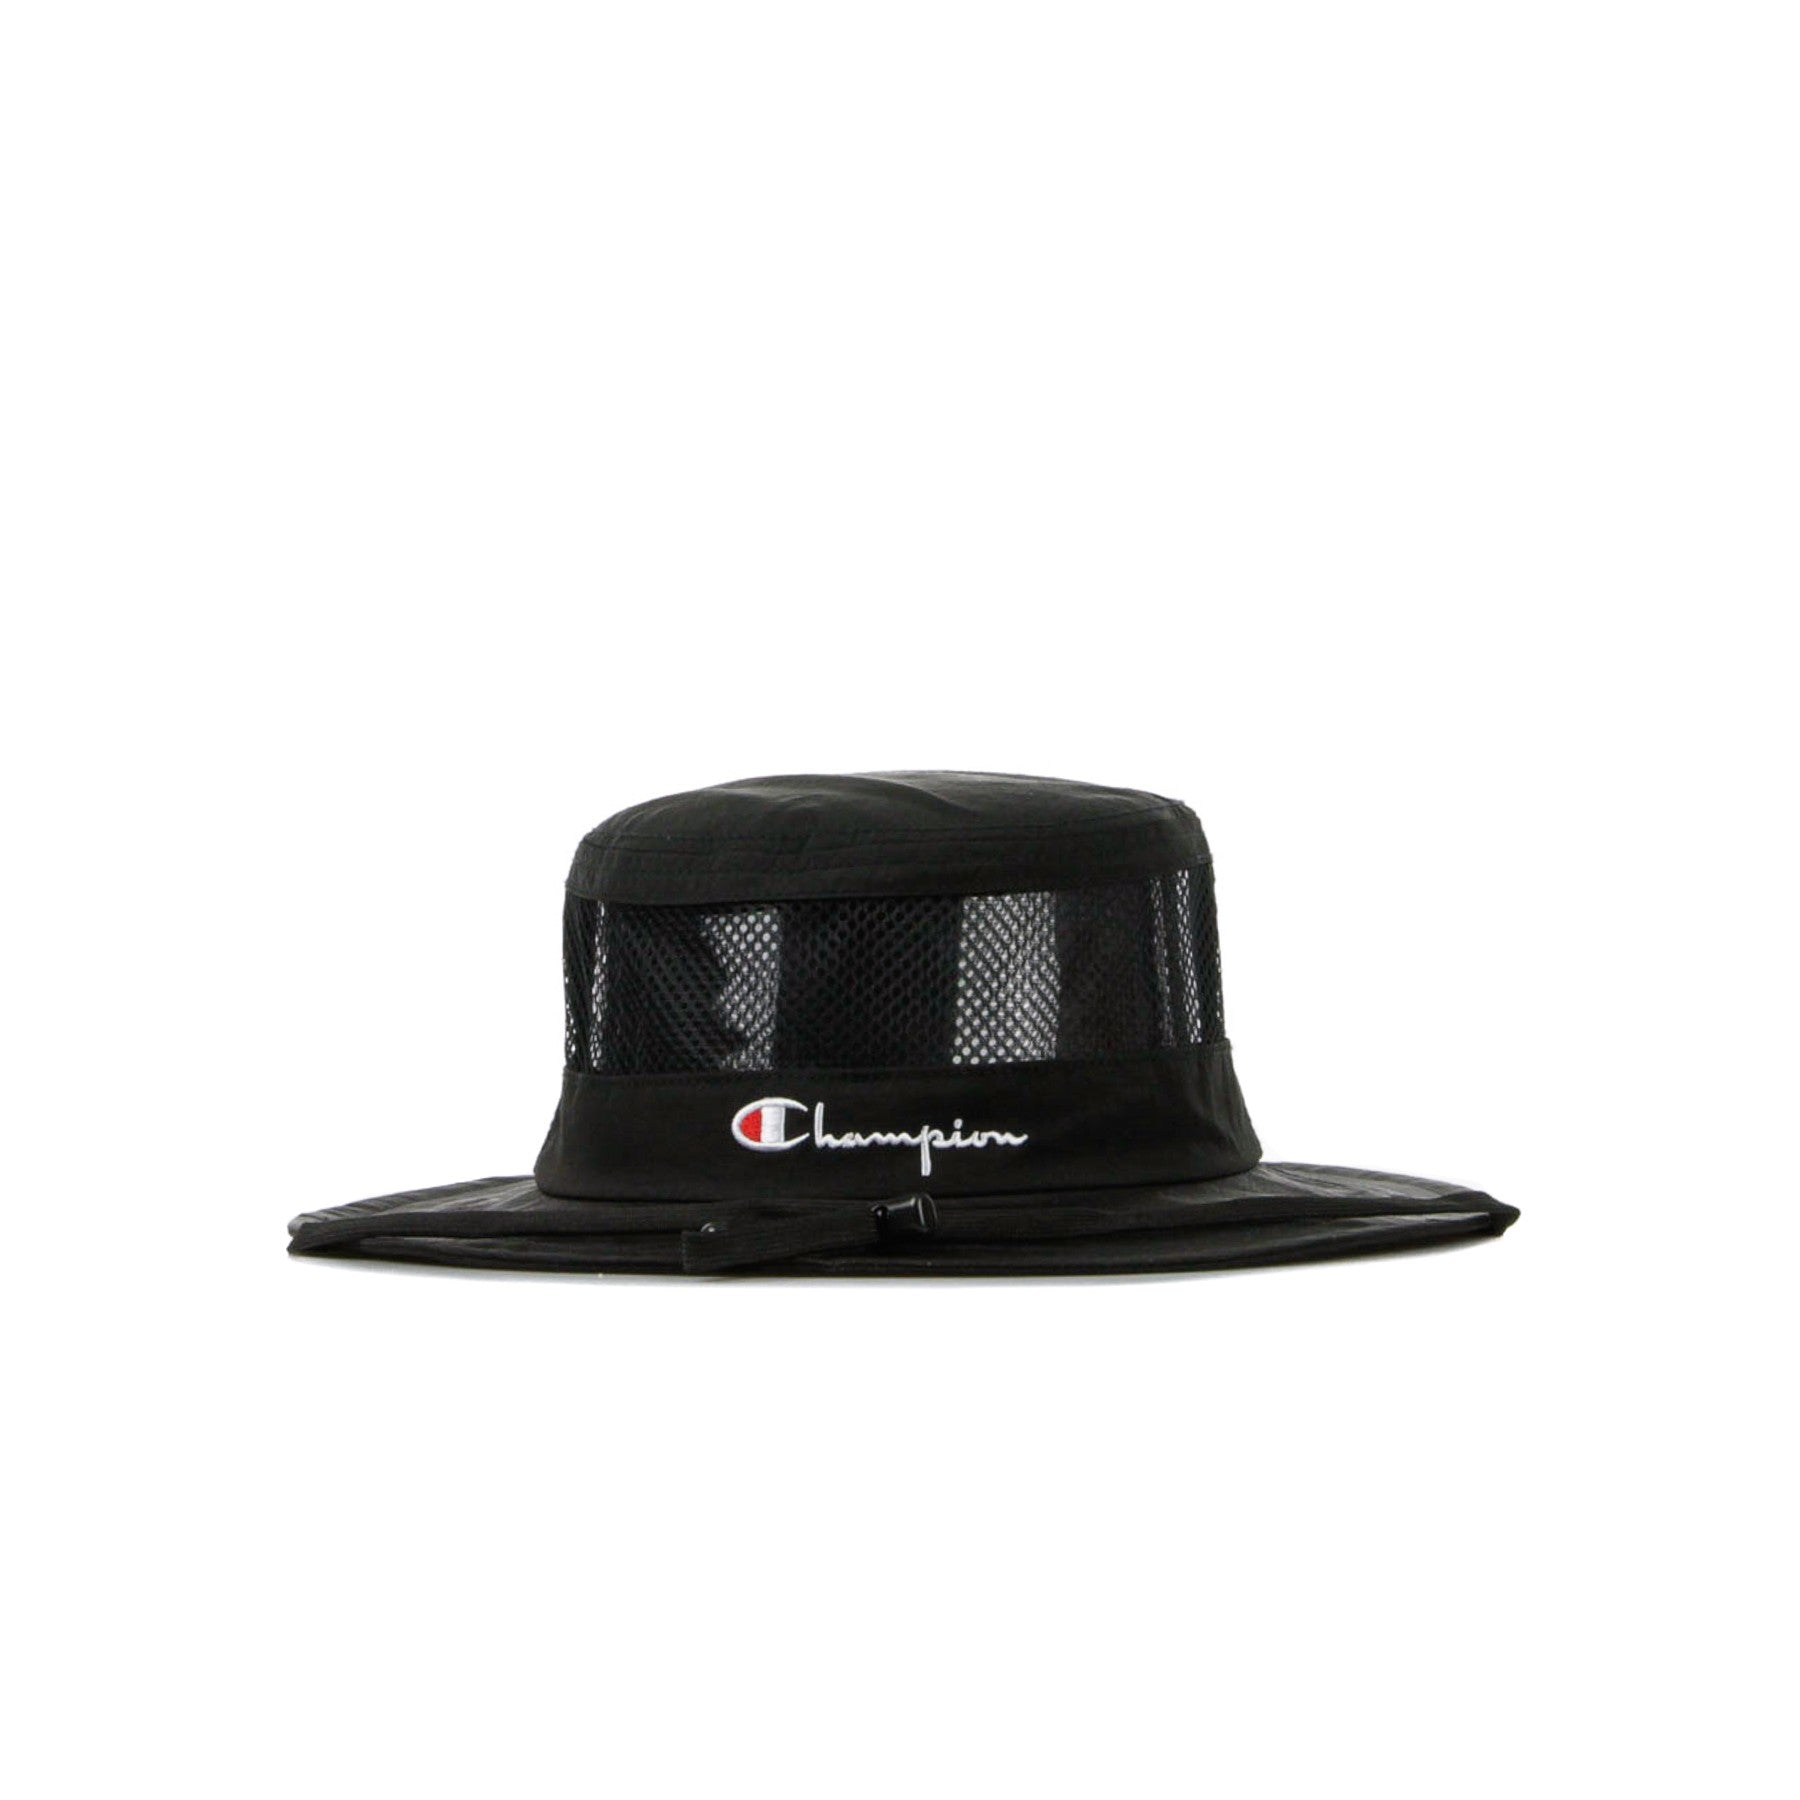 Bucket Cap Men's Fisherman Hat Black